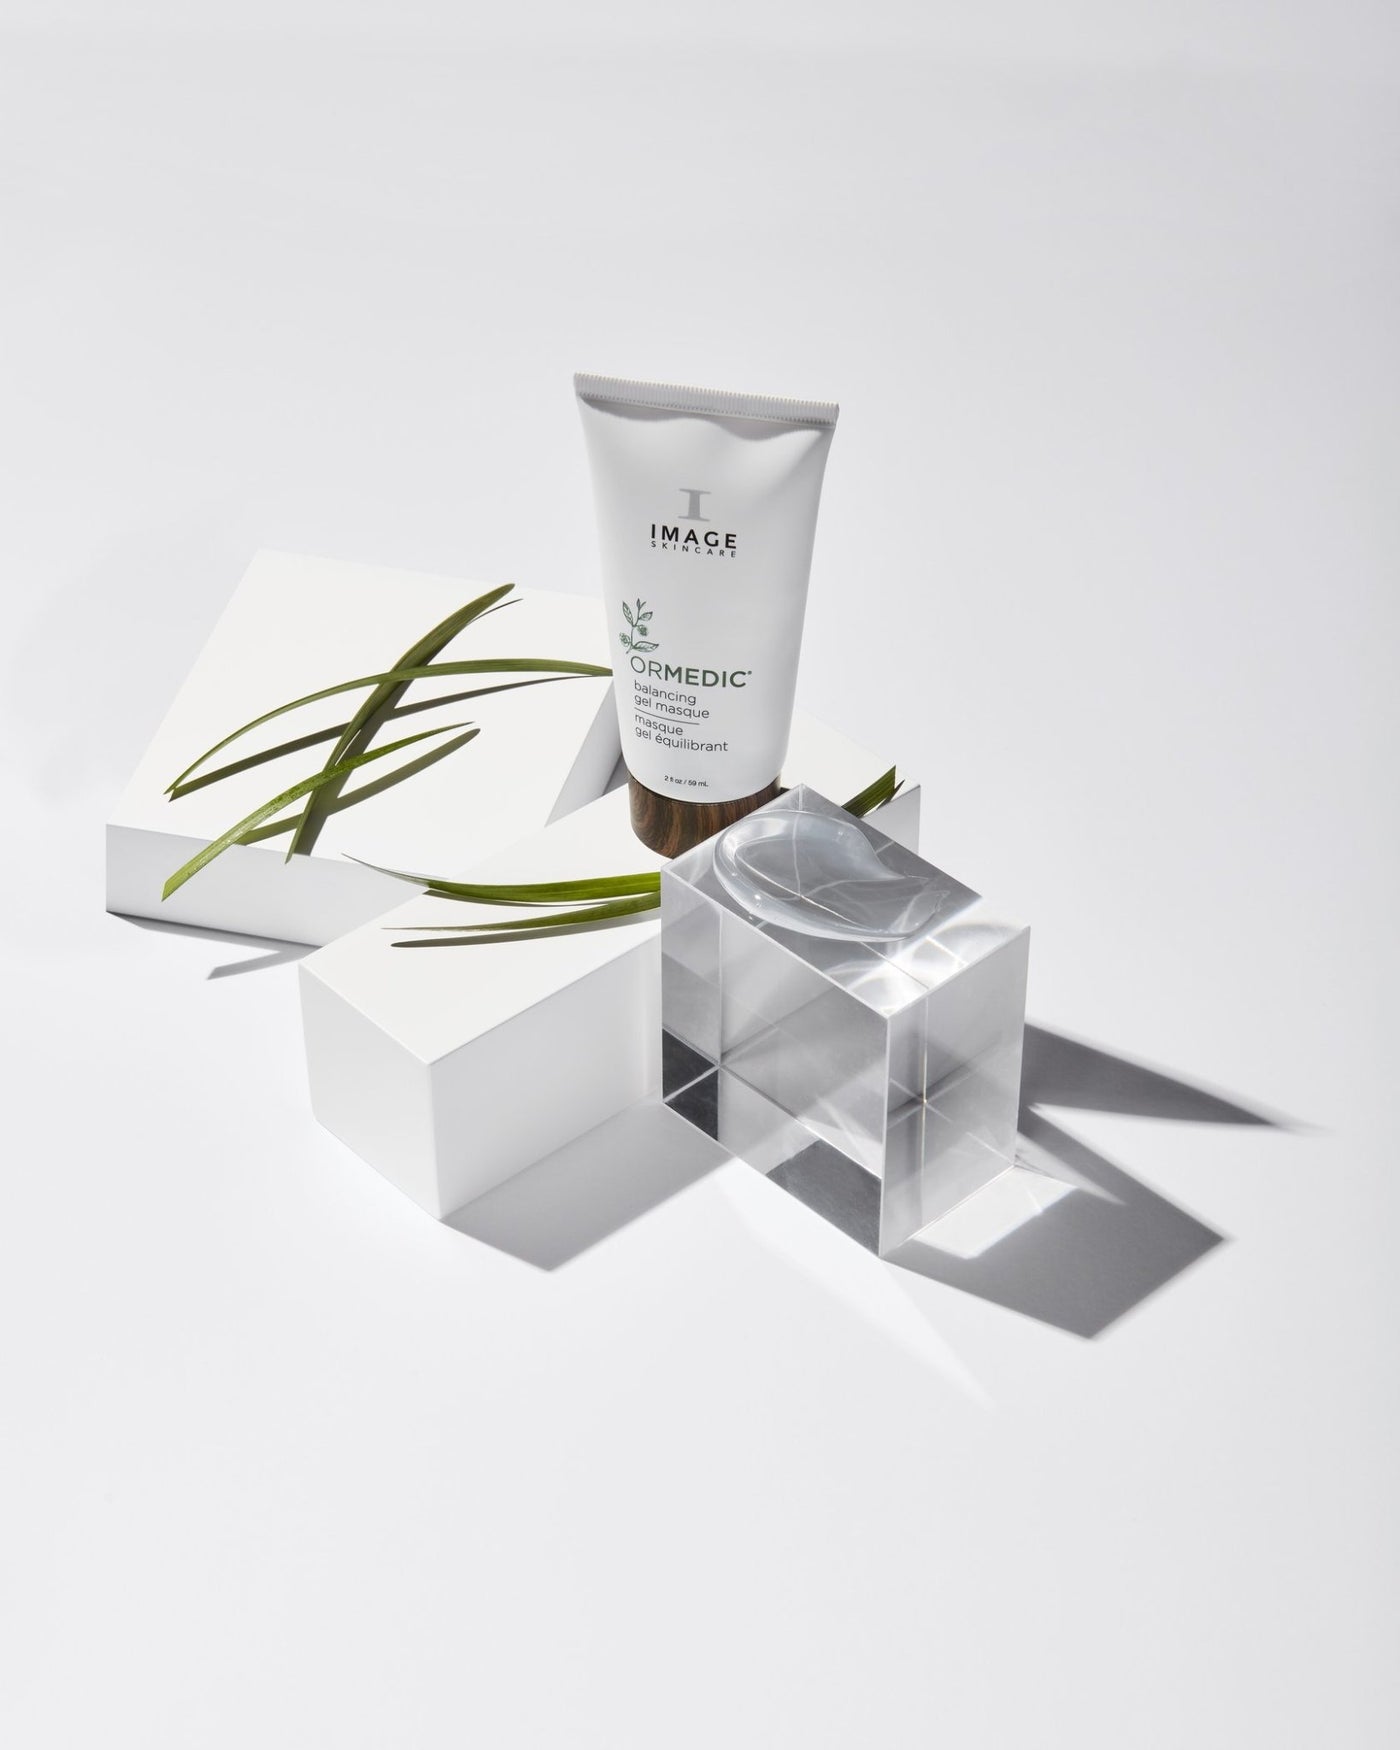 ORMEDIC balancing gel masque 2floz - The Skin Beauty Shoppe